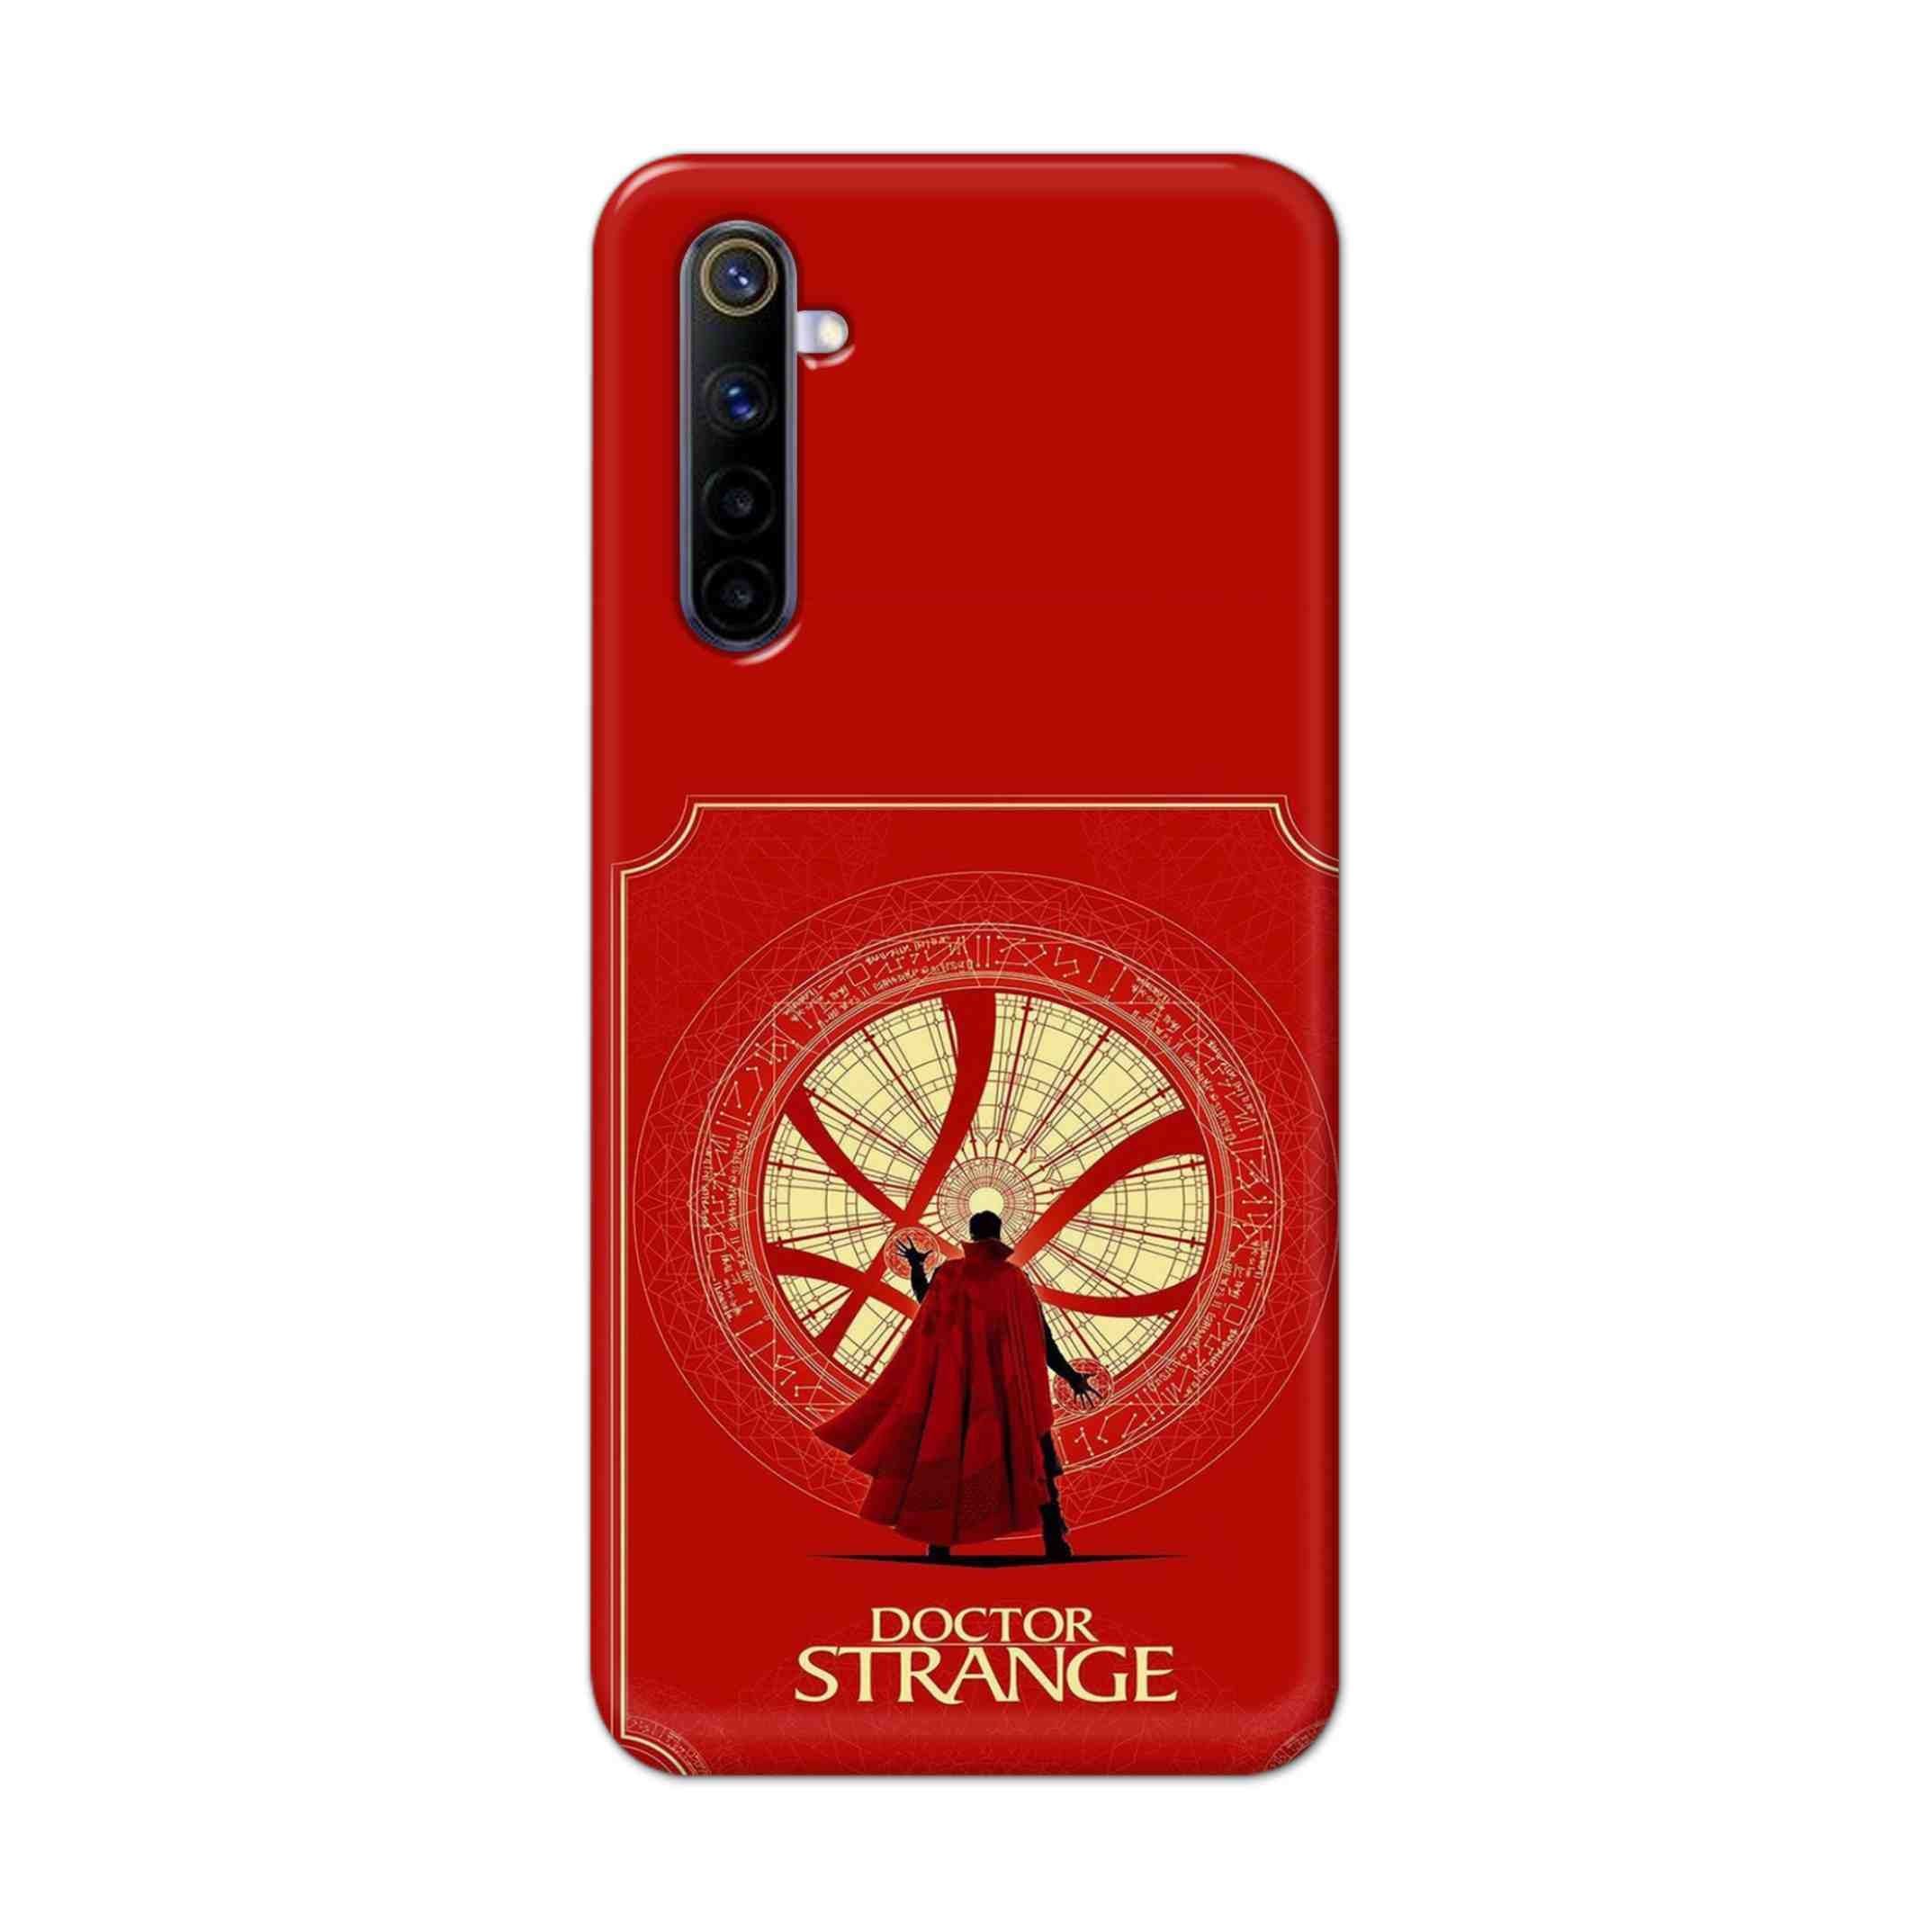 Buy Blood Doctor Strange Hard Back Mobile Phone Case Cover For REALME 6 PRO Online